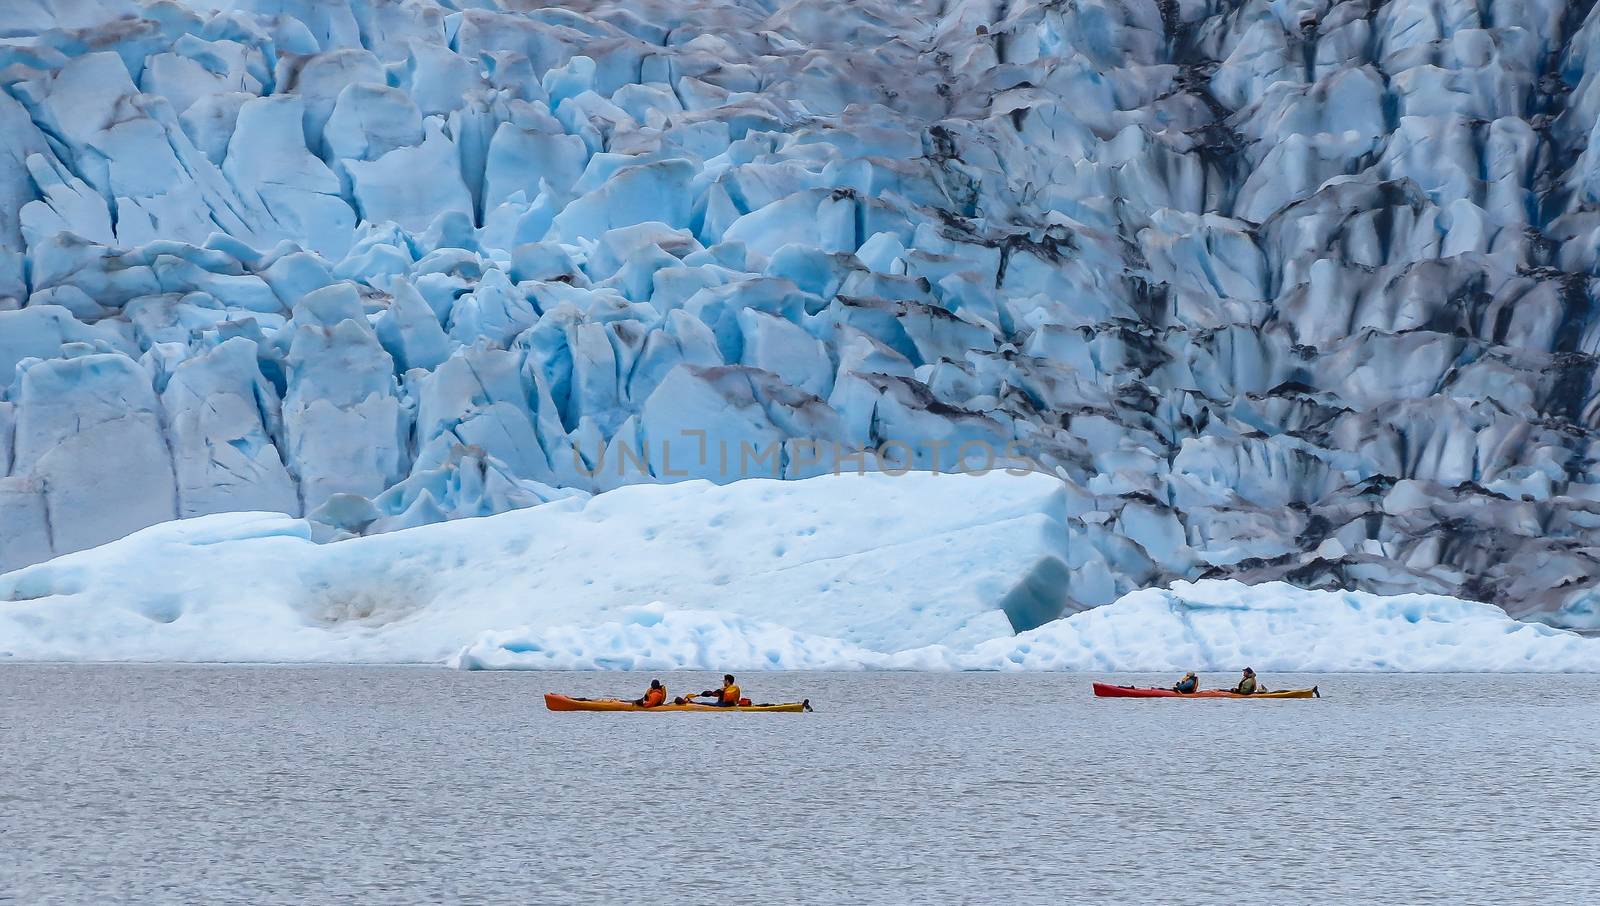 Kayakers enjoying the lake near Mendenhall Glacier at Juneau, Alaska.
Photo taken on: June 17th, 2012